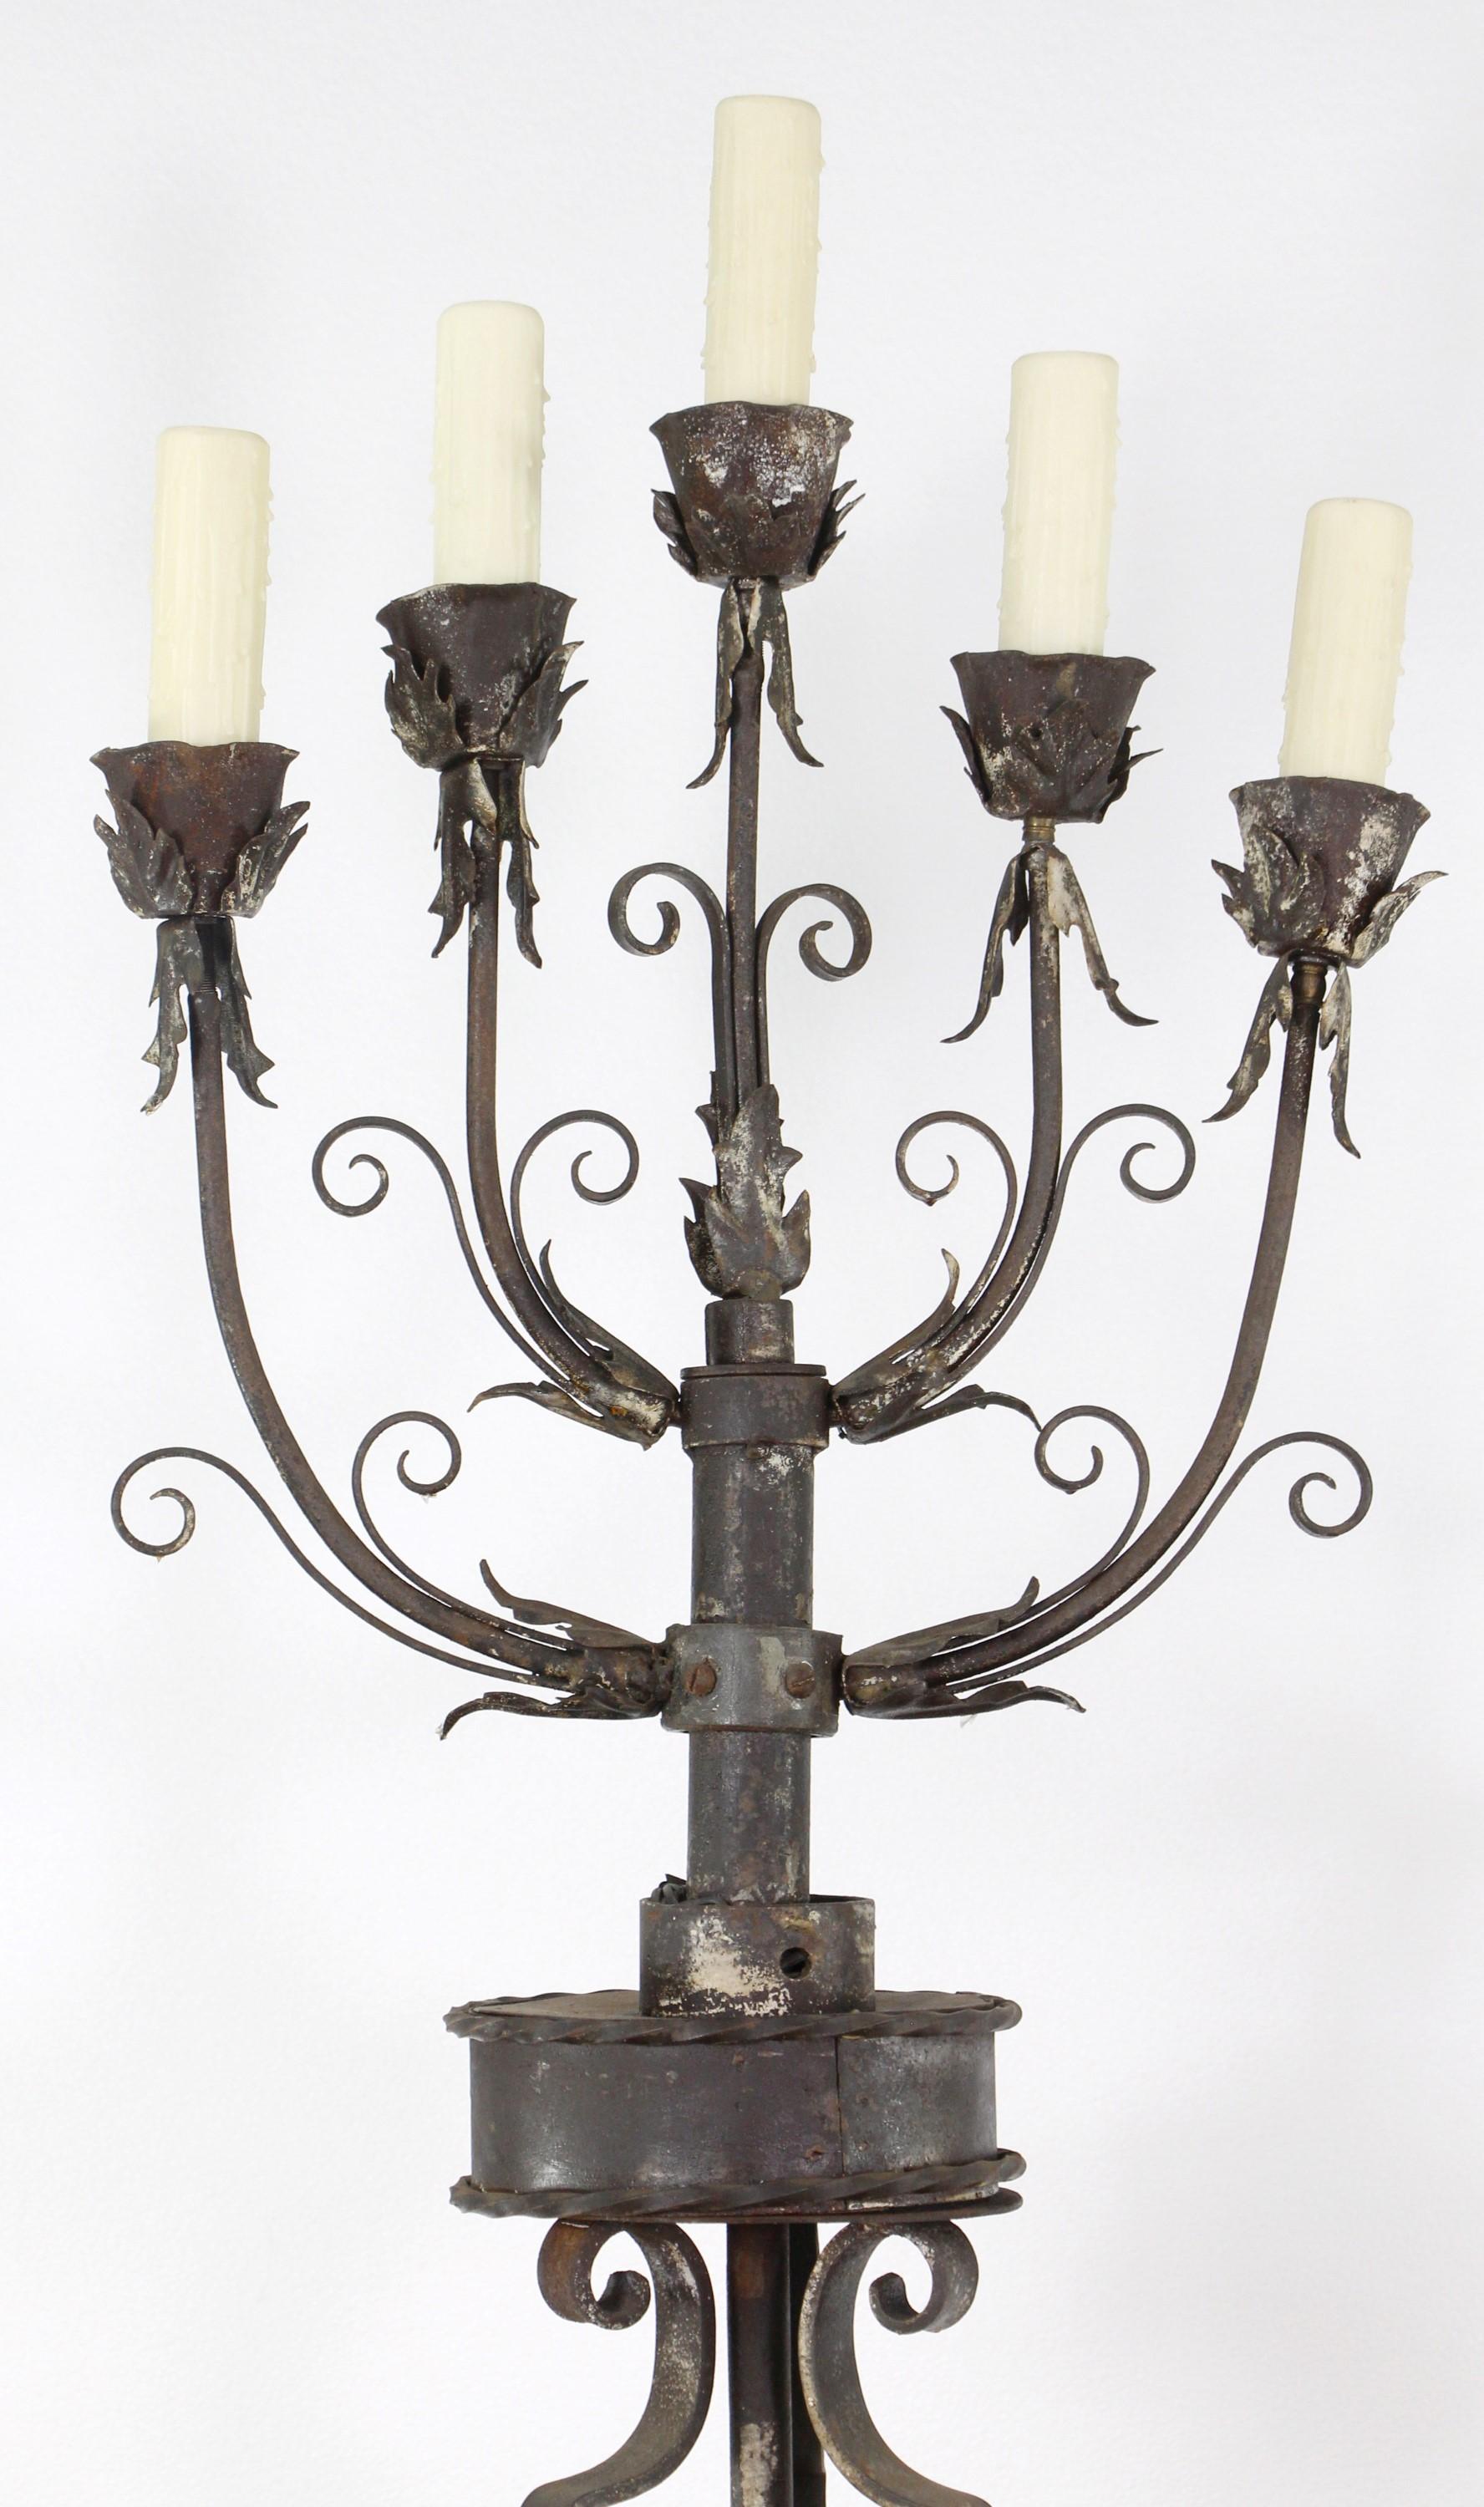 Paar Kandelaber-Stehlampen aus dem 19. Jahrhundert. Handgeschmiedetes Eisen mit floralen und blattförmigen Details. Handgefertigt mit Bändern und zusammengesteckt. Jetzt restauriert und elektrifiziert. Jede Stehleuchte hat 5 Fassungen. Der Preis